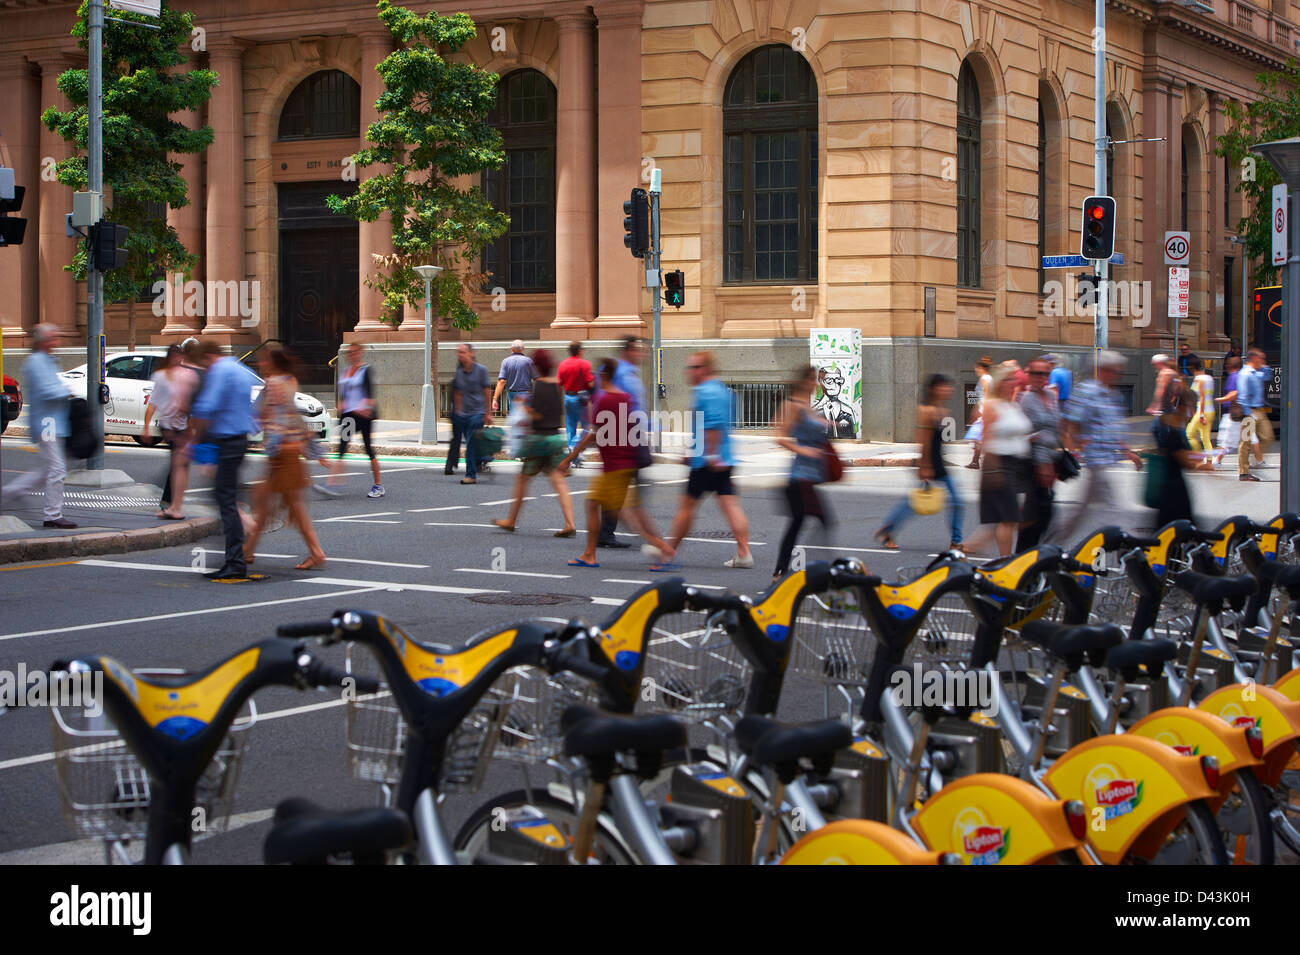 Brisbane city pedestrians & traffic Stock Photo